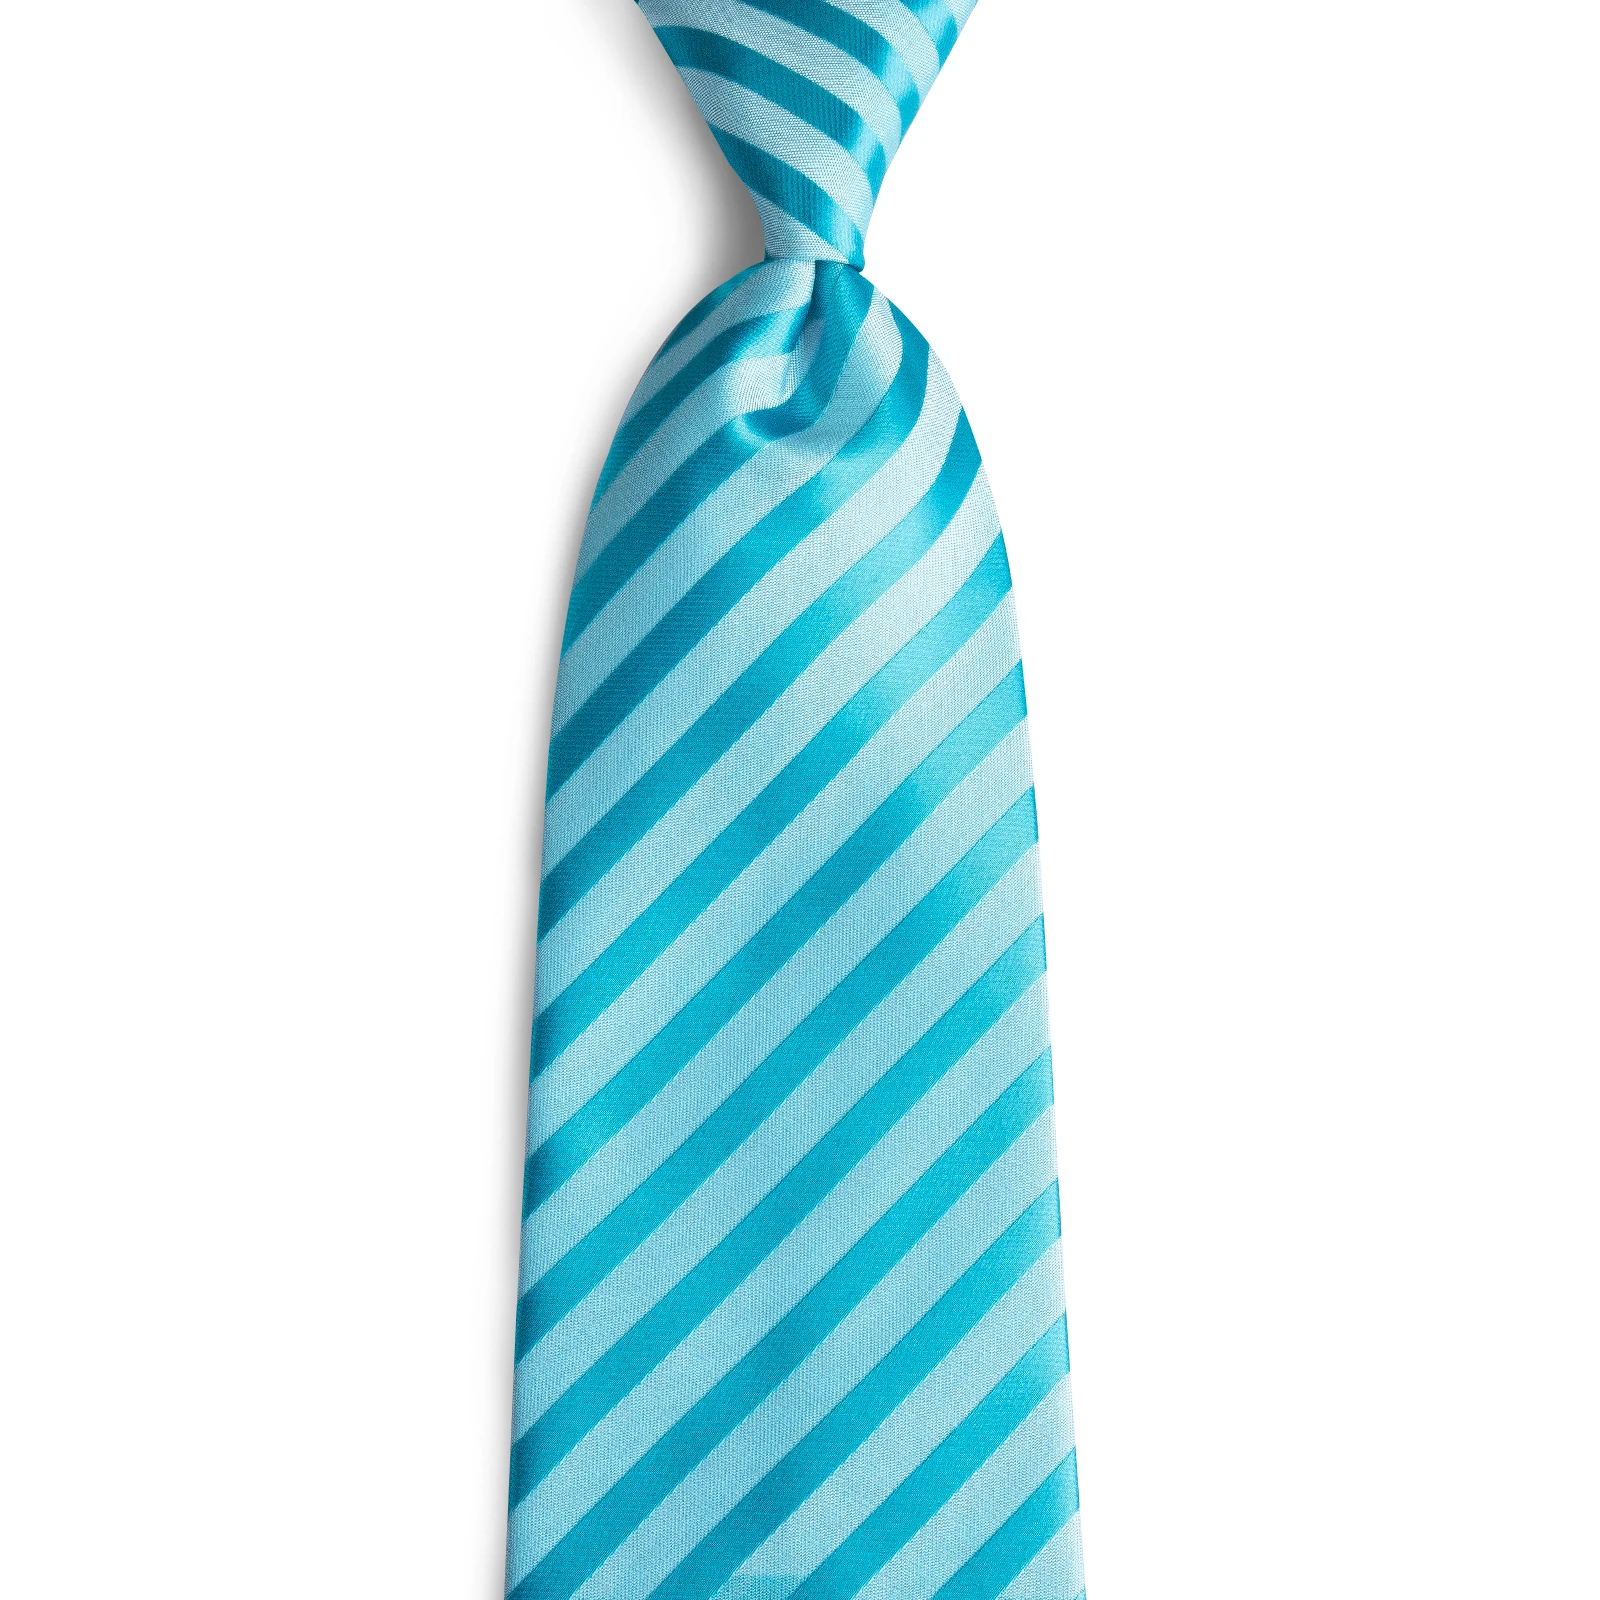 Дизайнерский мужской галстук DiBanGu, синий, красный, розовый, мужской галстук, деловой, Свадебный, вечерний галстук, набор, шелк, галстук, носовой запонки, галстуки